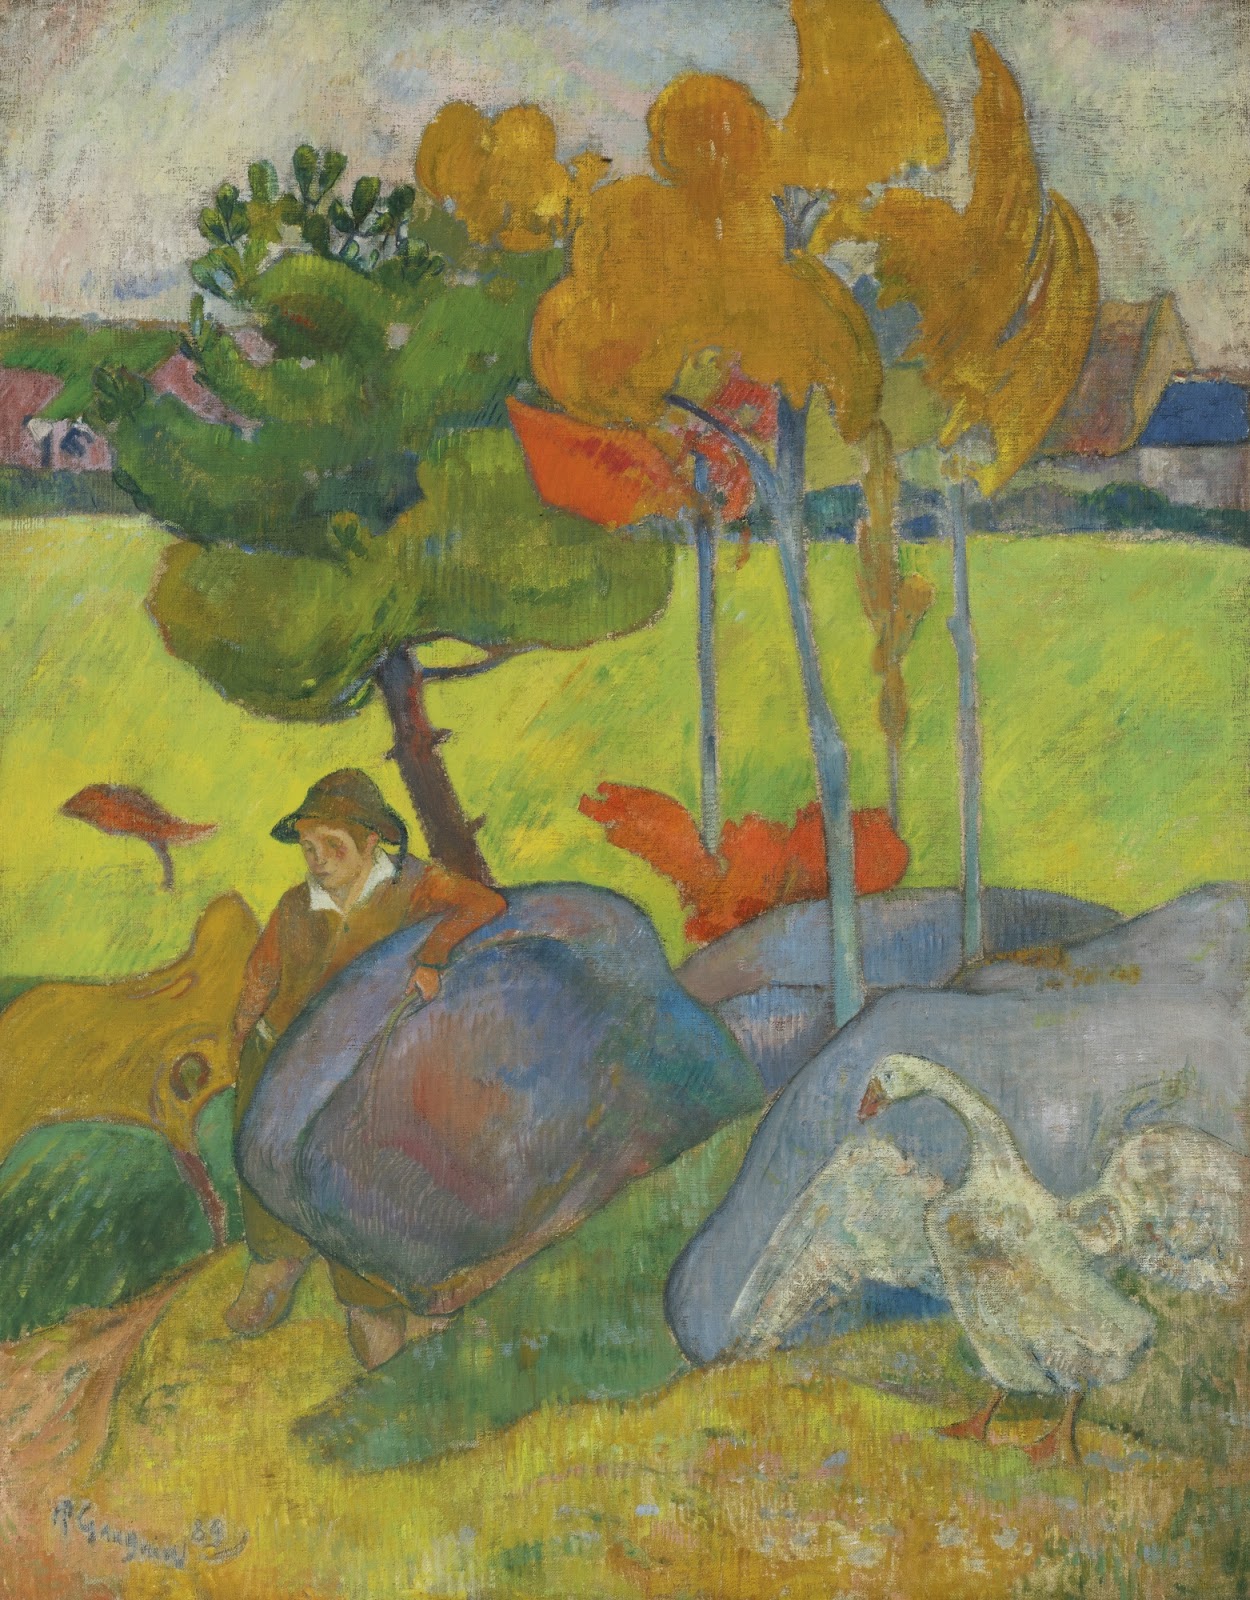 Paul+Gauguin-1848-1903 (344).jpg